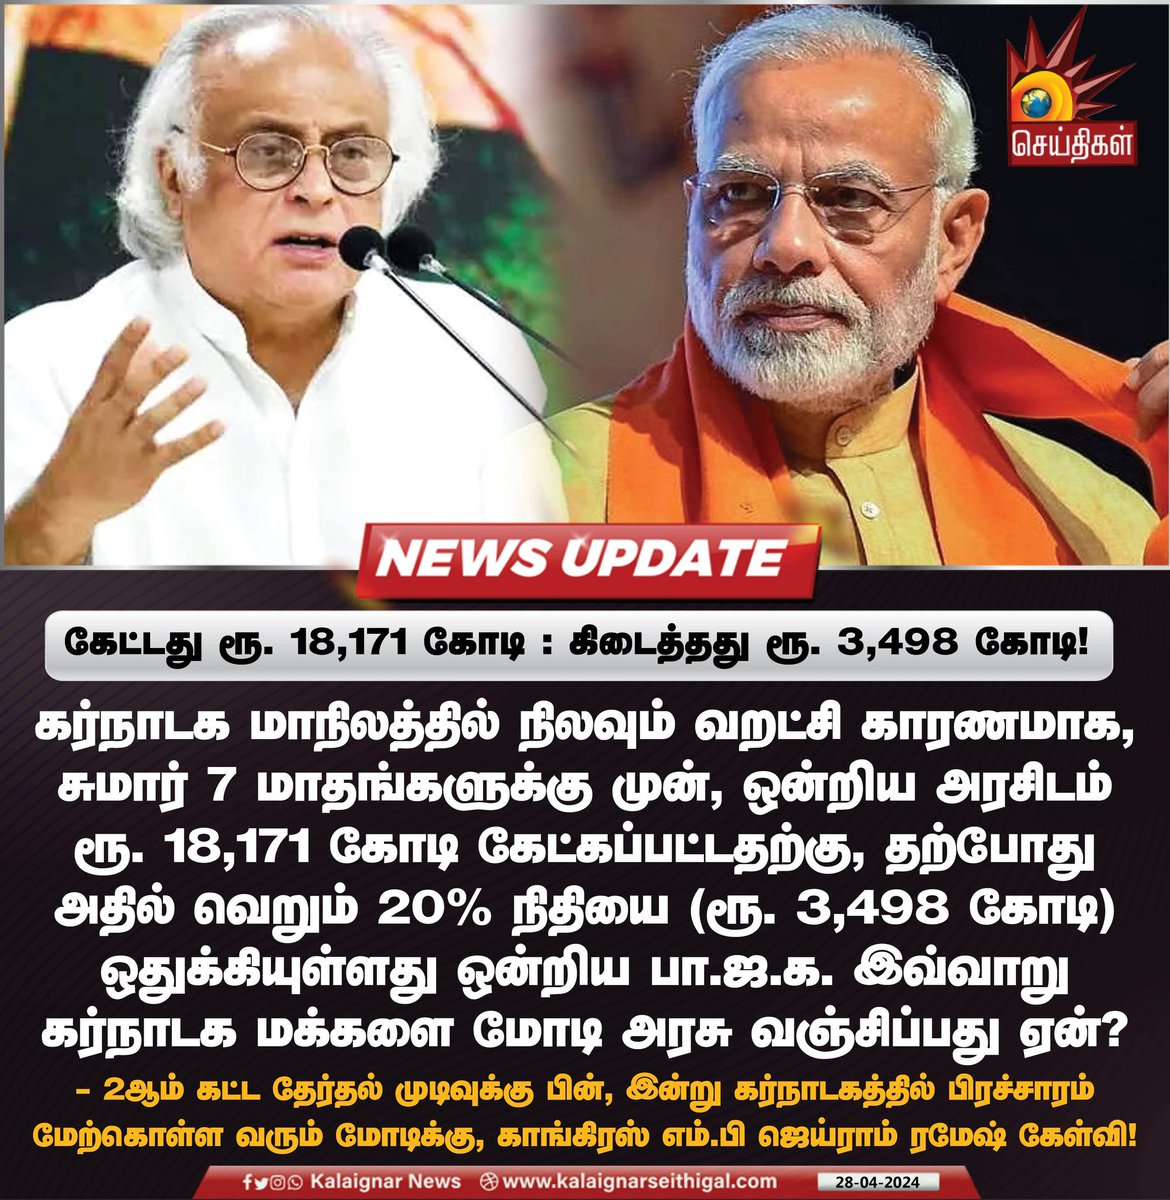 கேட்டது ரூ. 18,171 கோடி : கிடைத்தது ரூ. 3,498 கோடி!

#JairamRamesh #BJP #Karnataka #BJPFails #BJPFearsINDIA #relieffund #Congress #KalaignarSeithigal